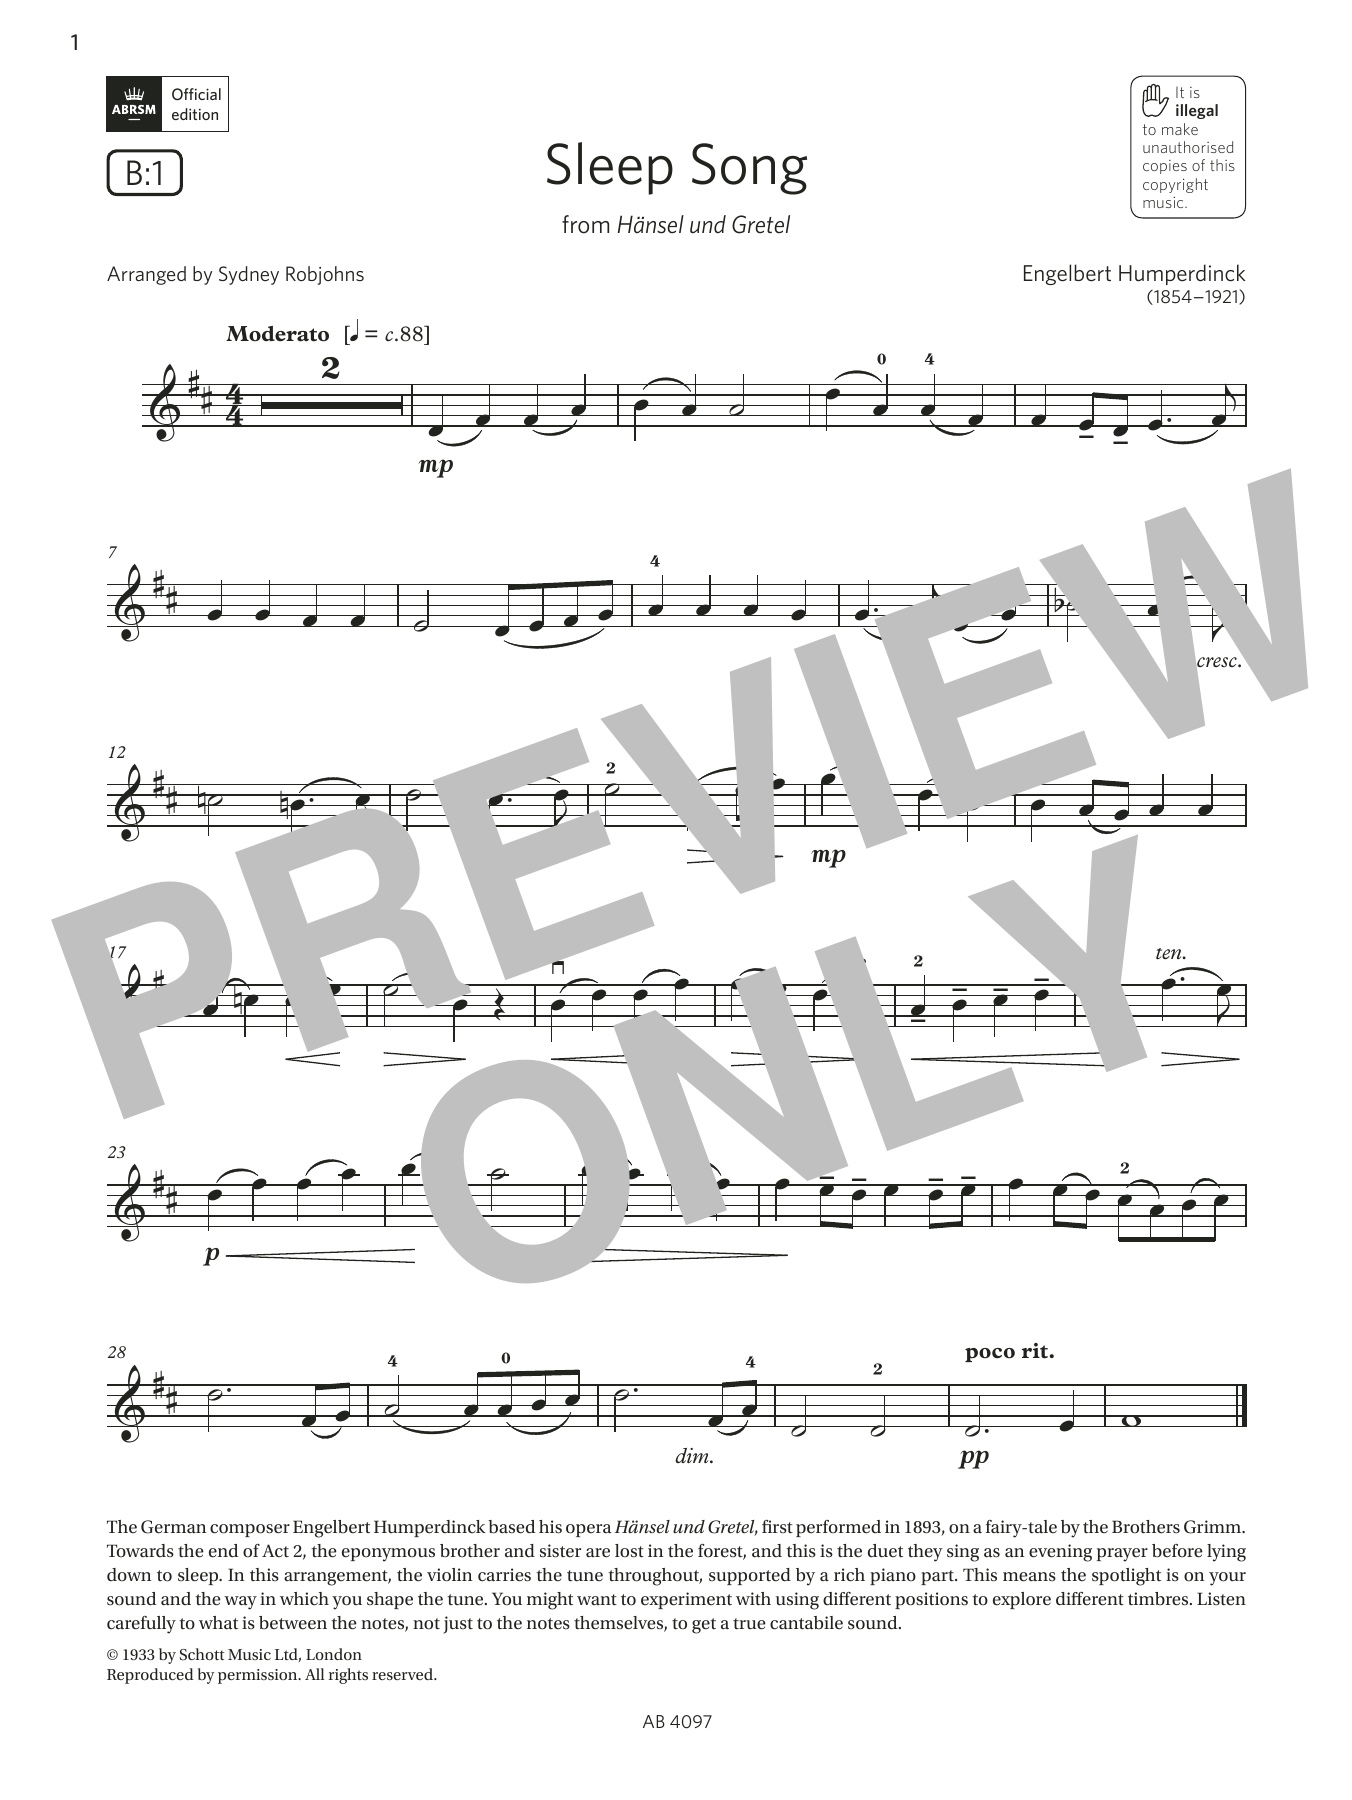 Download Engelbert Humperdinck Sleep Song (Grade 3, B1, from the ABRSM Sheet Music